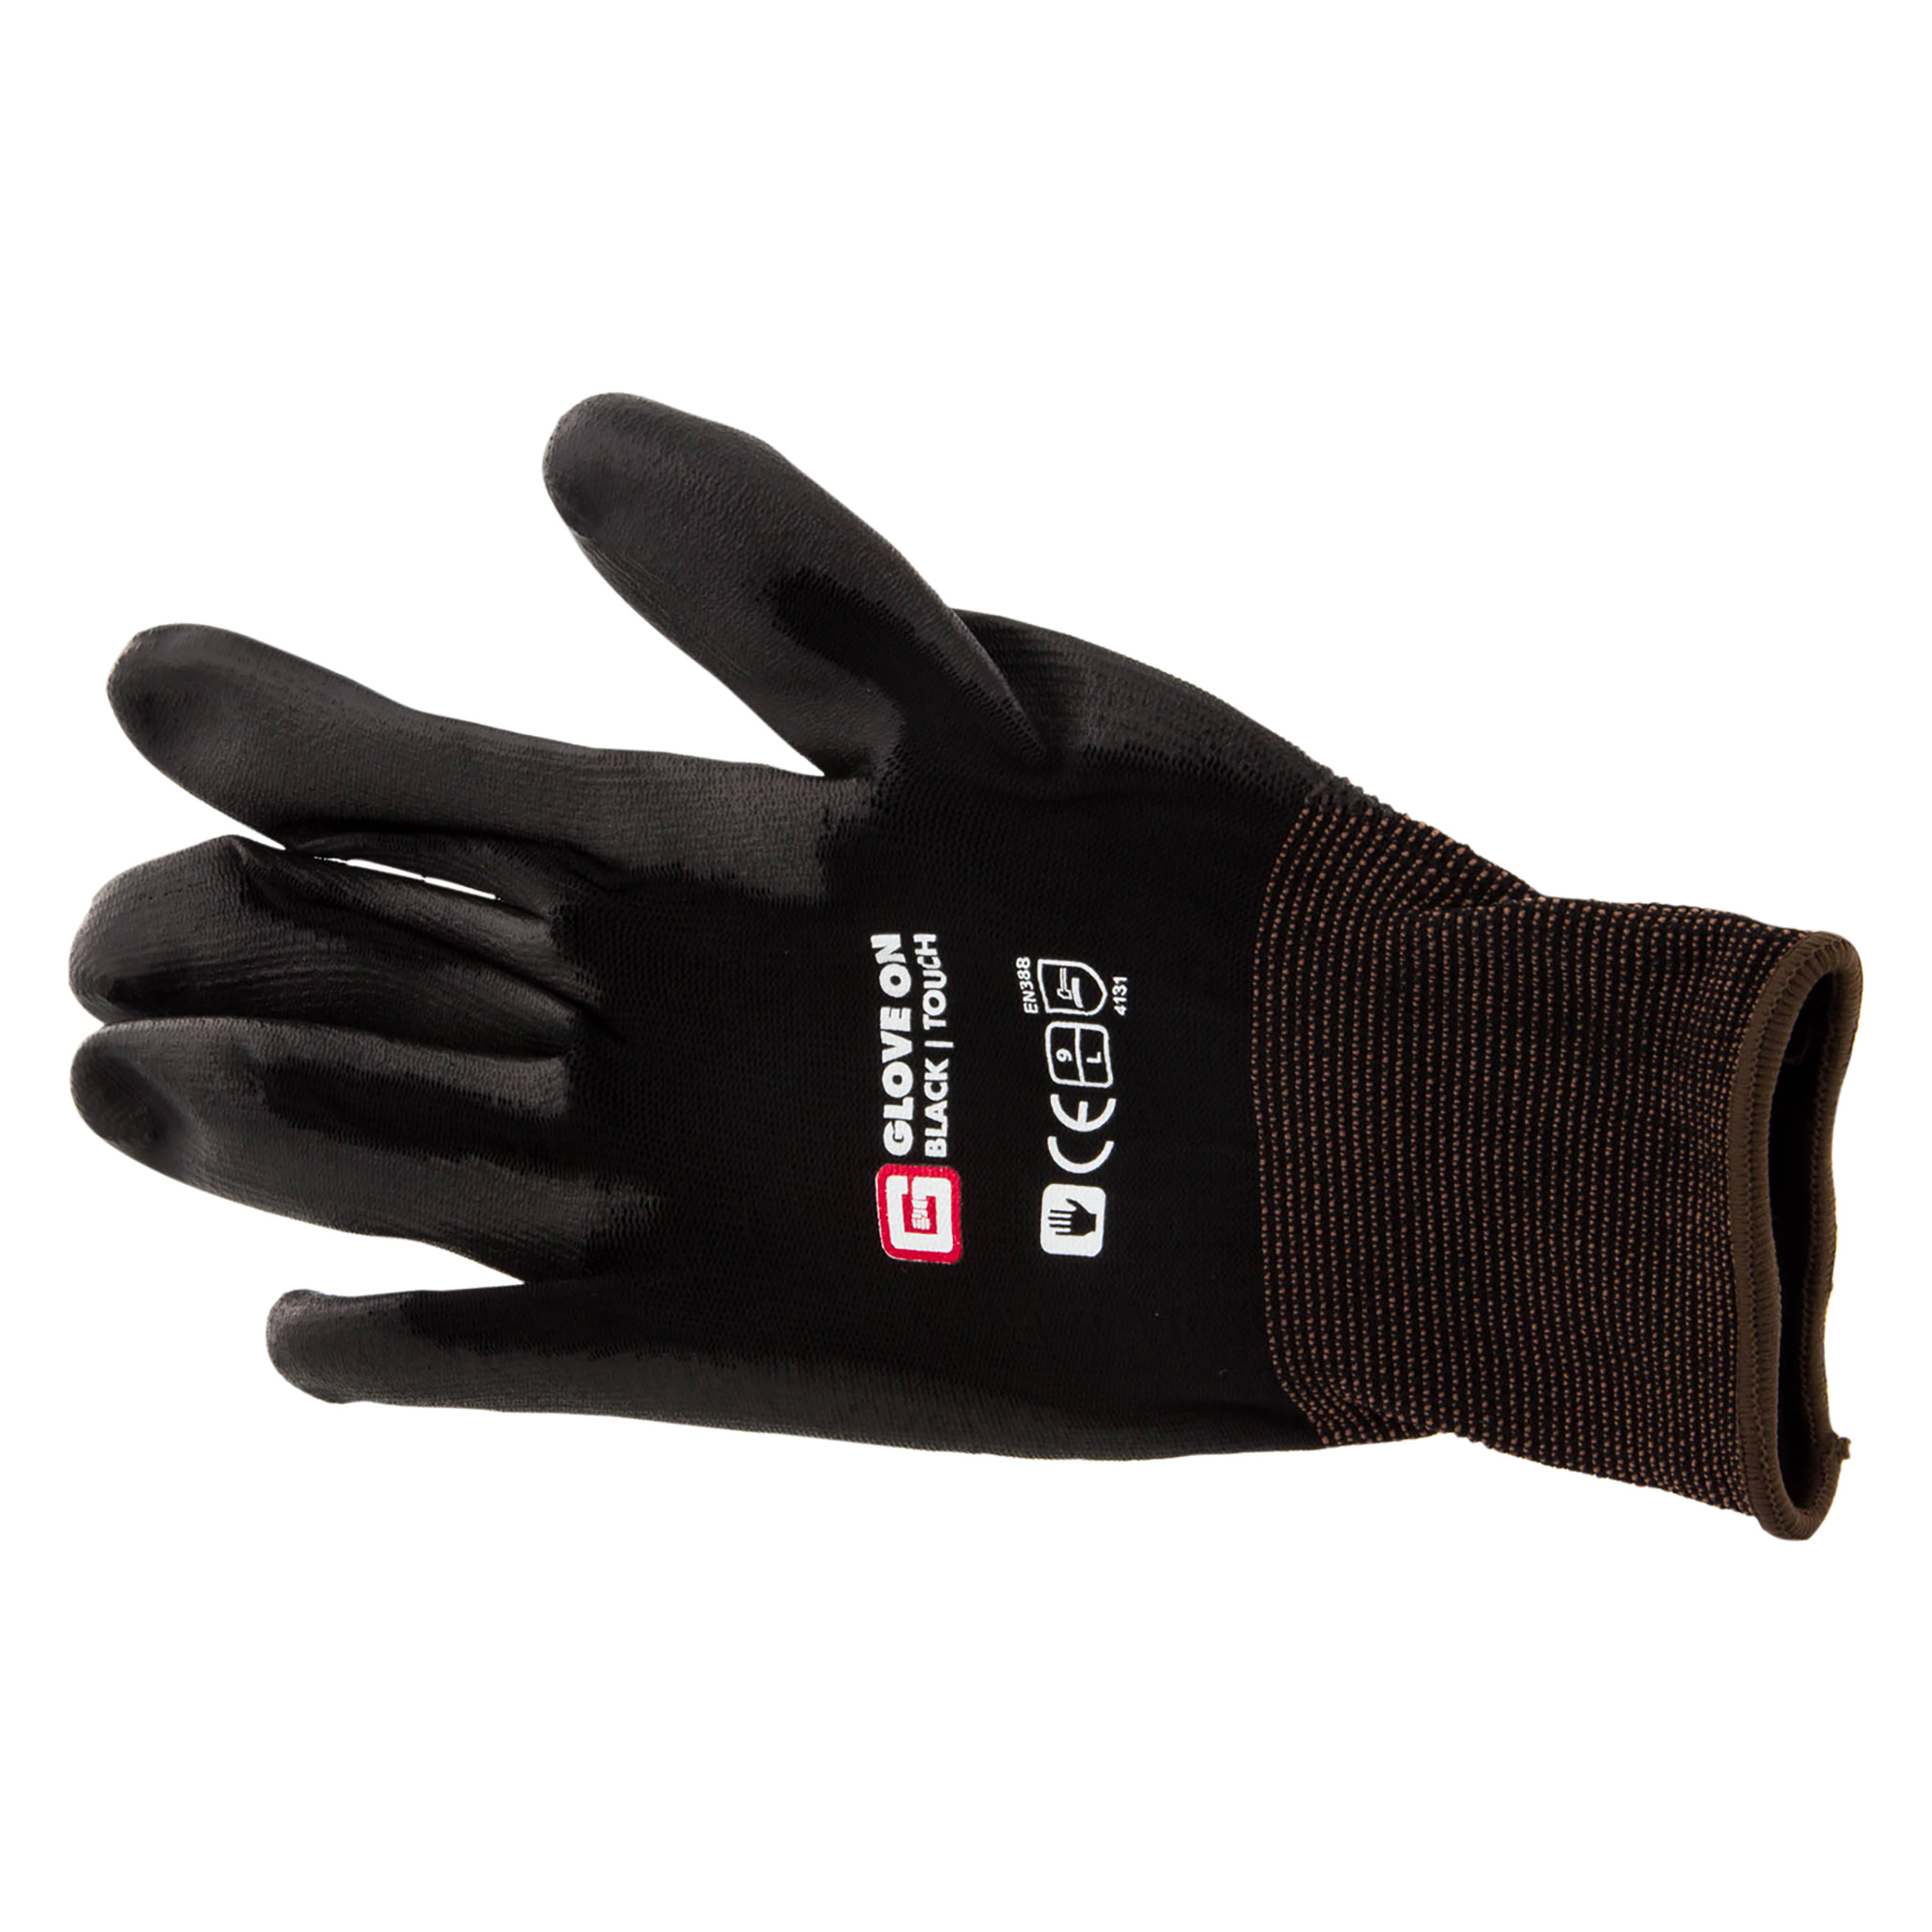 21.080.27 Glove On Touch werkhandschoen touch black - L